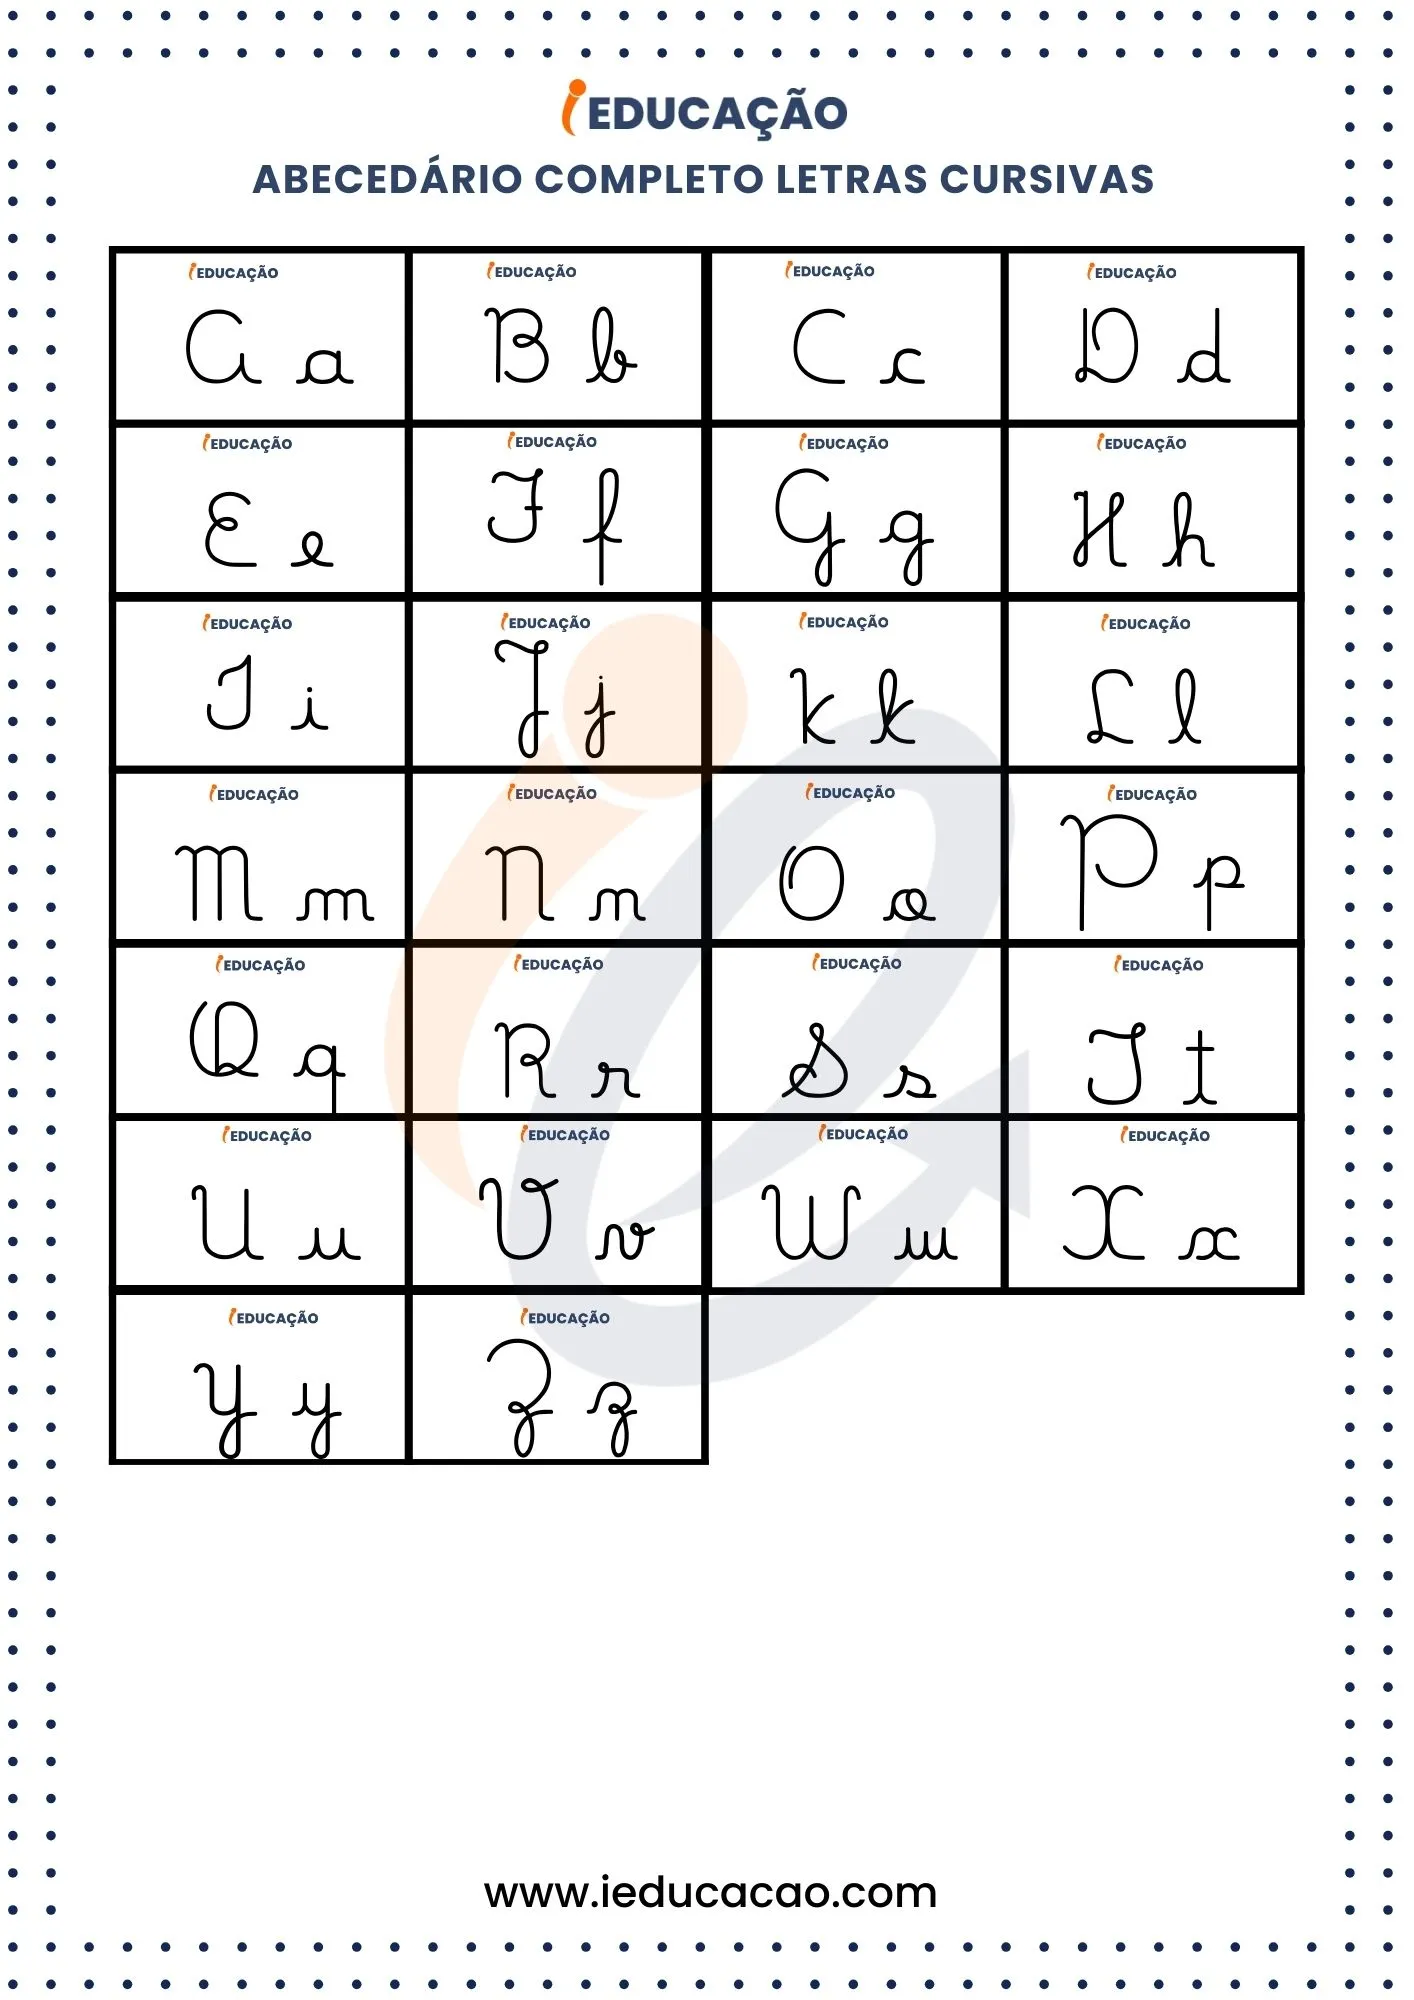 Abecedário com Letras Cursivas para Imprimir- Alfabeto completo cursivo.jpg